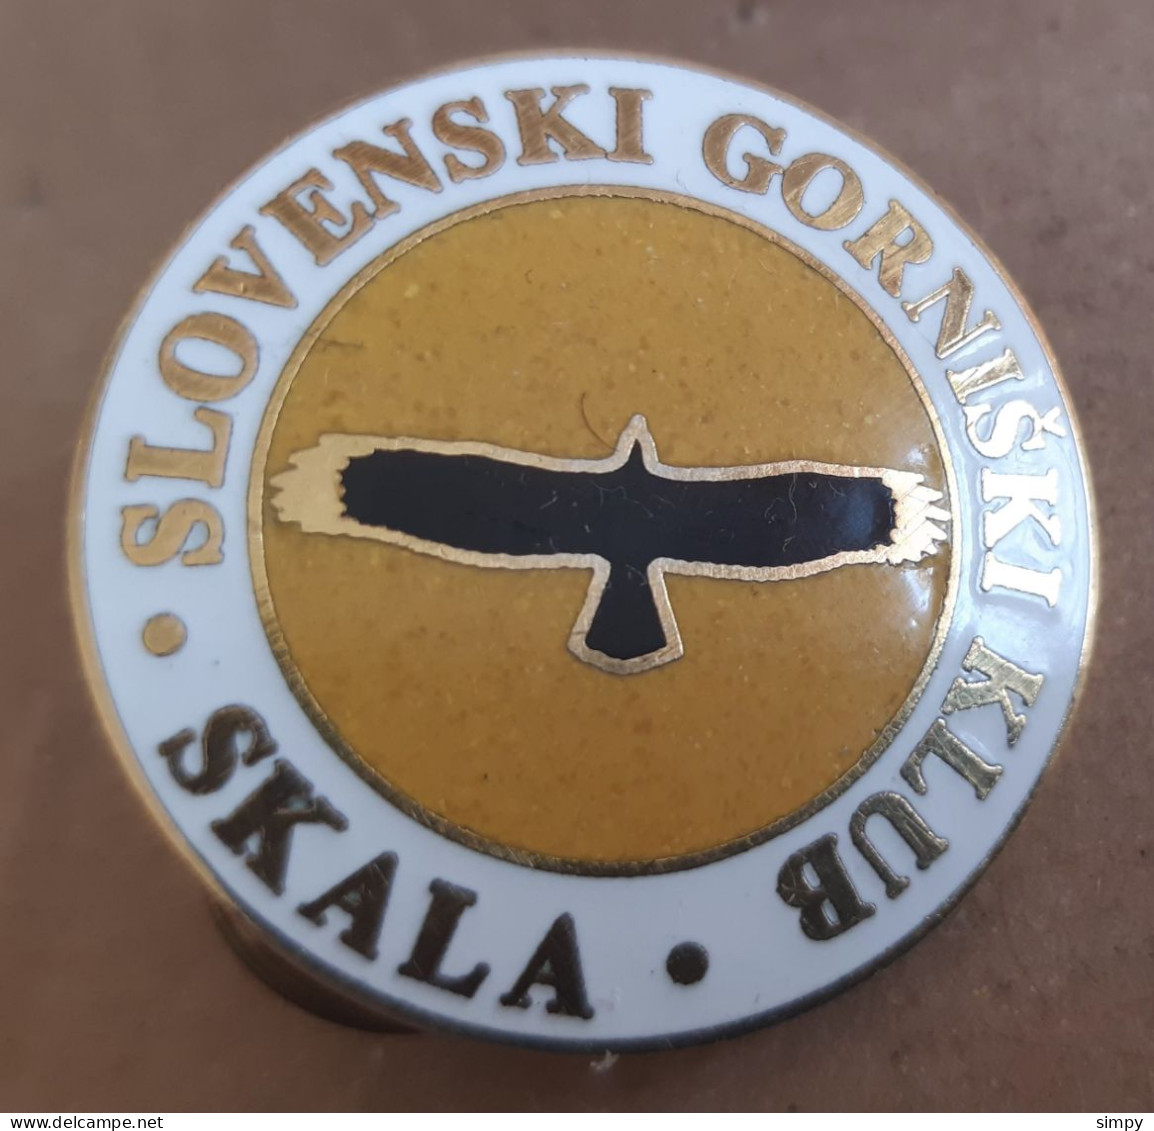 Mountaineering Club Slovenski Gorniski Klub SKALA Enamel Pin Badge Slovenia - Alpinismo, Arrampicata